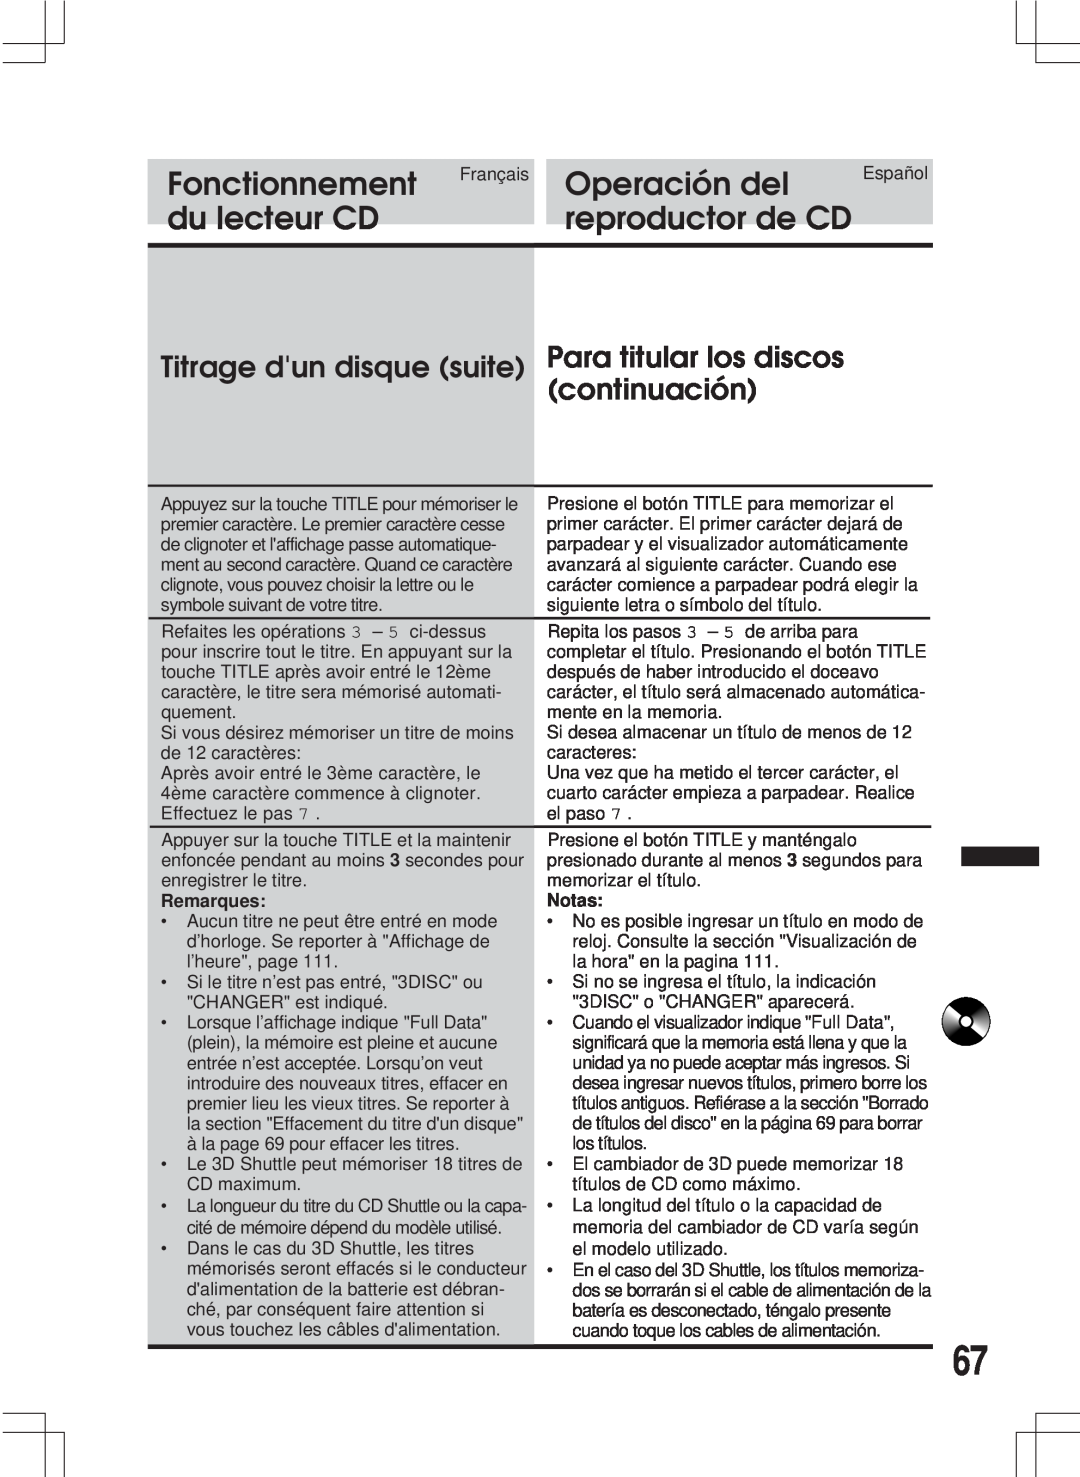 Alpine MDA-W890 owner manual Titrage dun disque suite Para titular los discos continuación, Fonctionnement, Operación del 